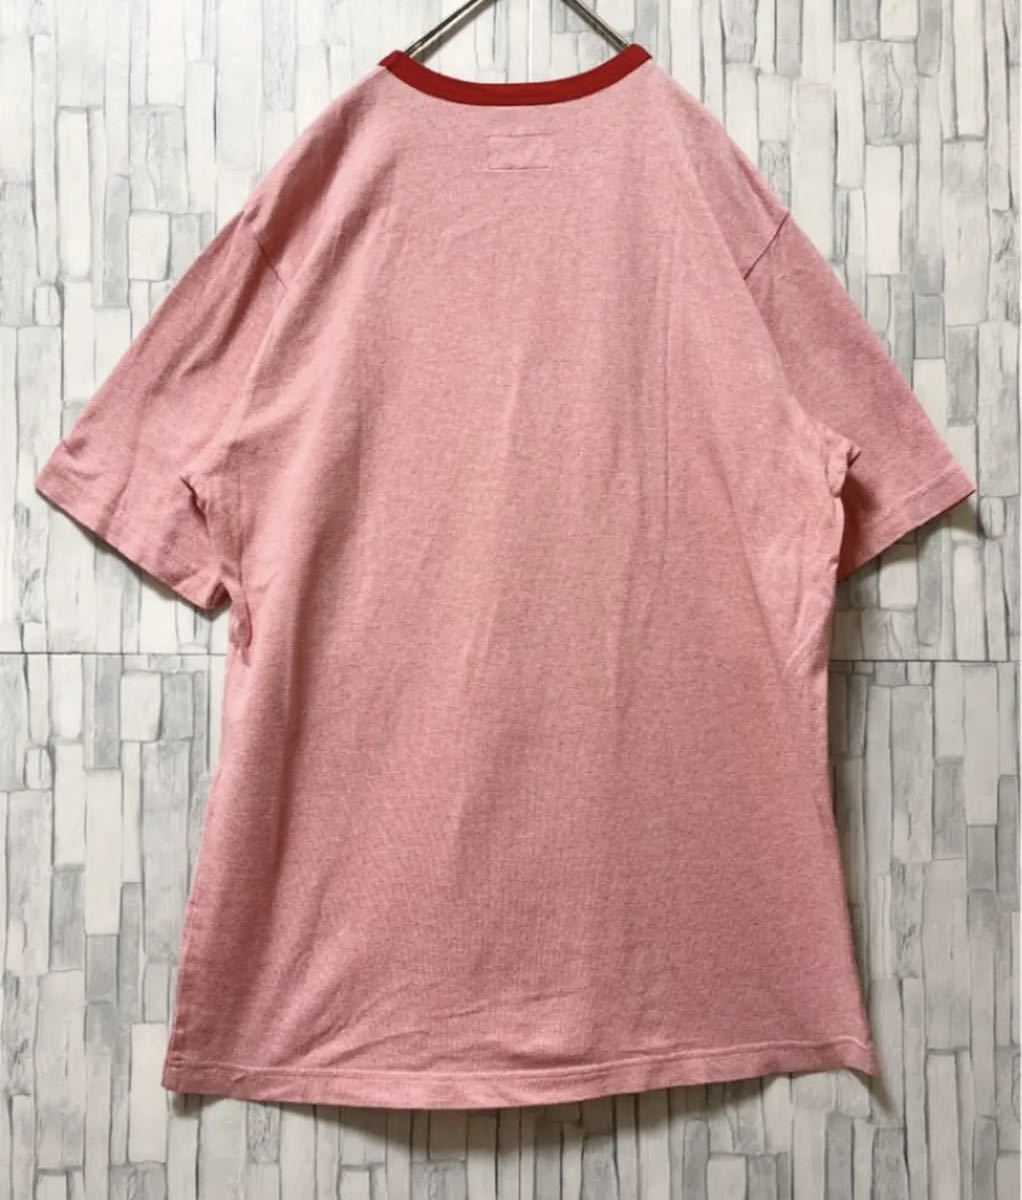 Supreme シュプリーム 半袖 リンガー ネック Tシャツ シンプルロゴ ワンポイントロゴ サイズM サーモンピンク 送料無料